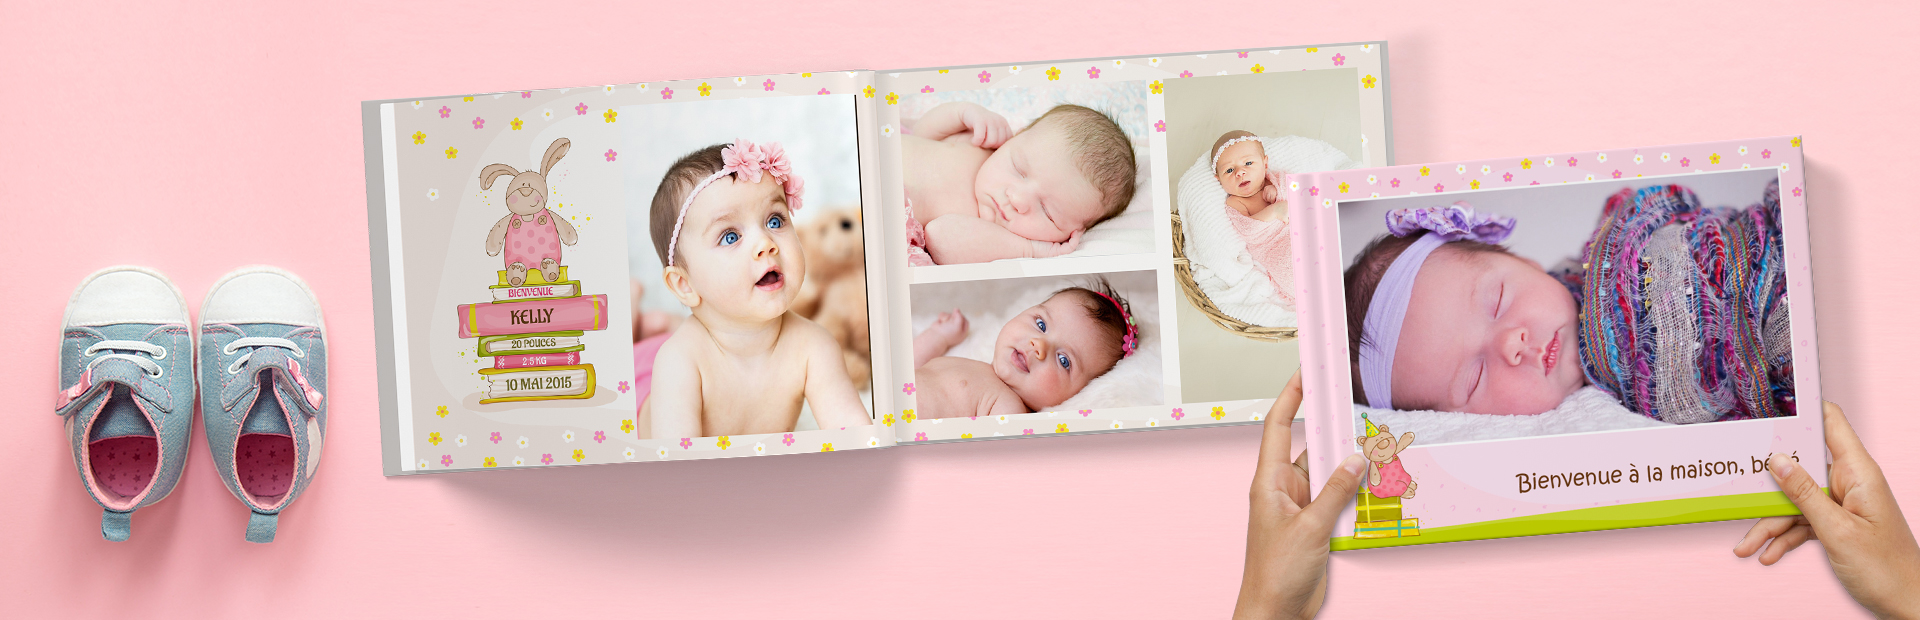 Livres photo bébé fille  Nouveaux livres photo et album photo pour bébé -  Picsy